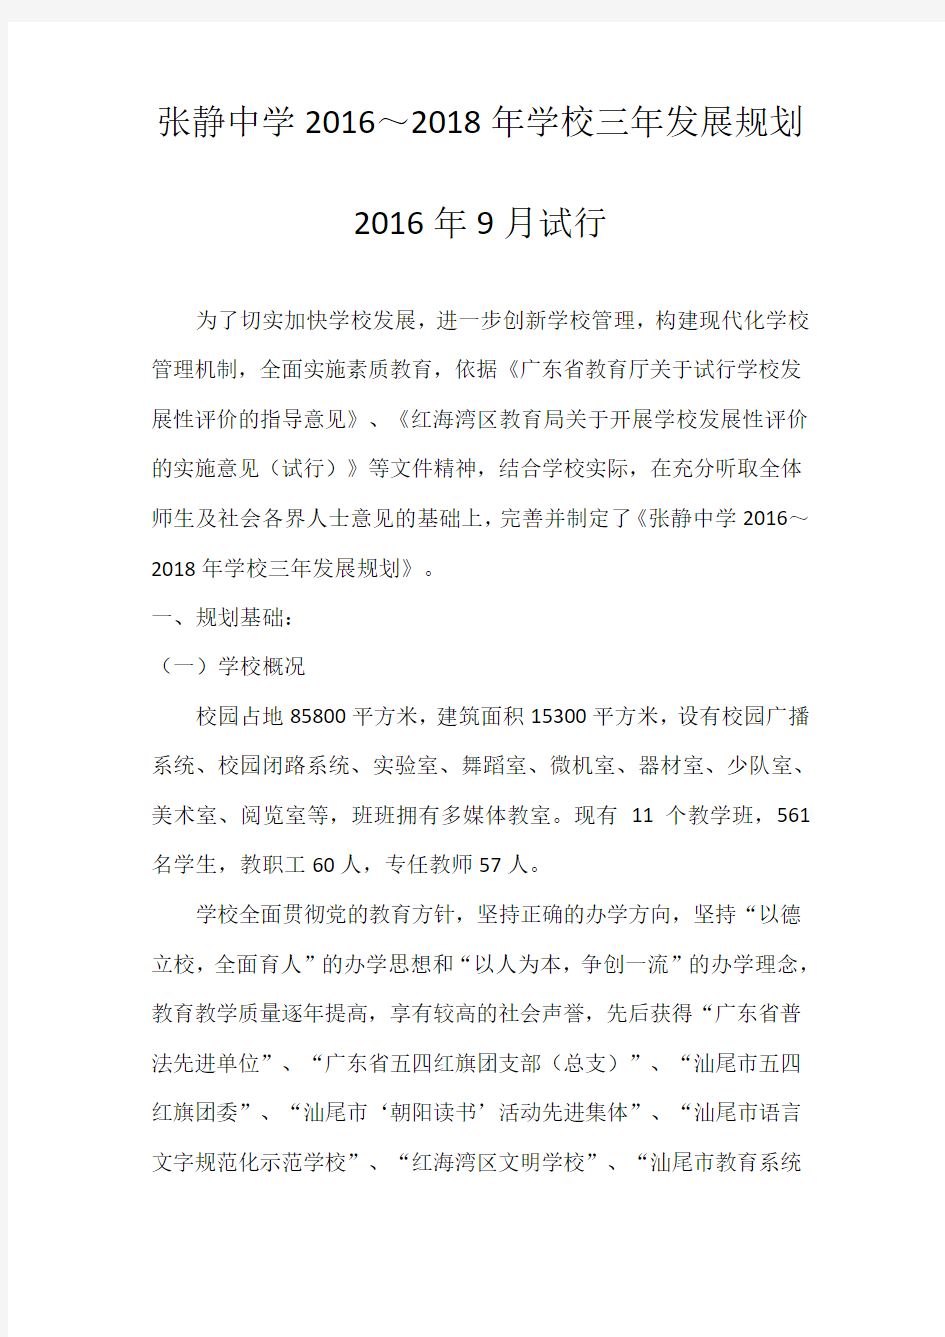 张静中学2016～2018年学校三年发展规划